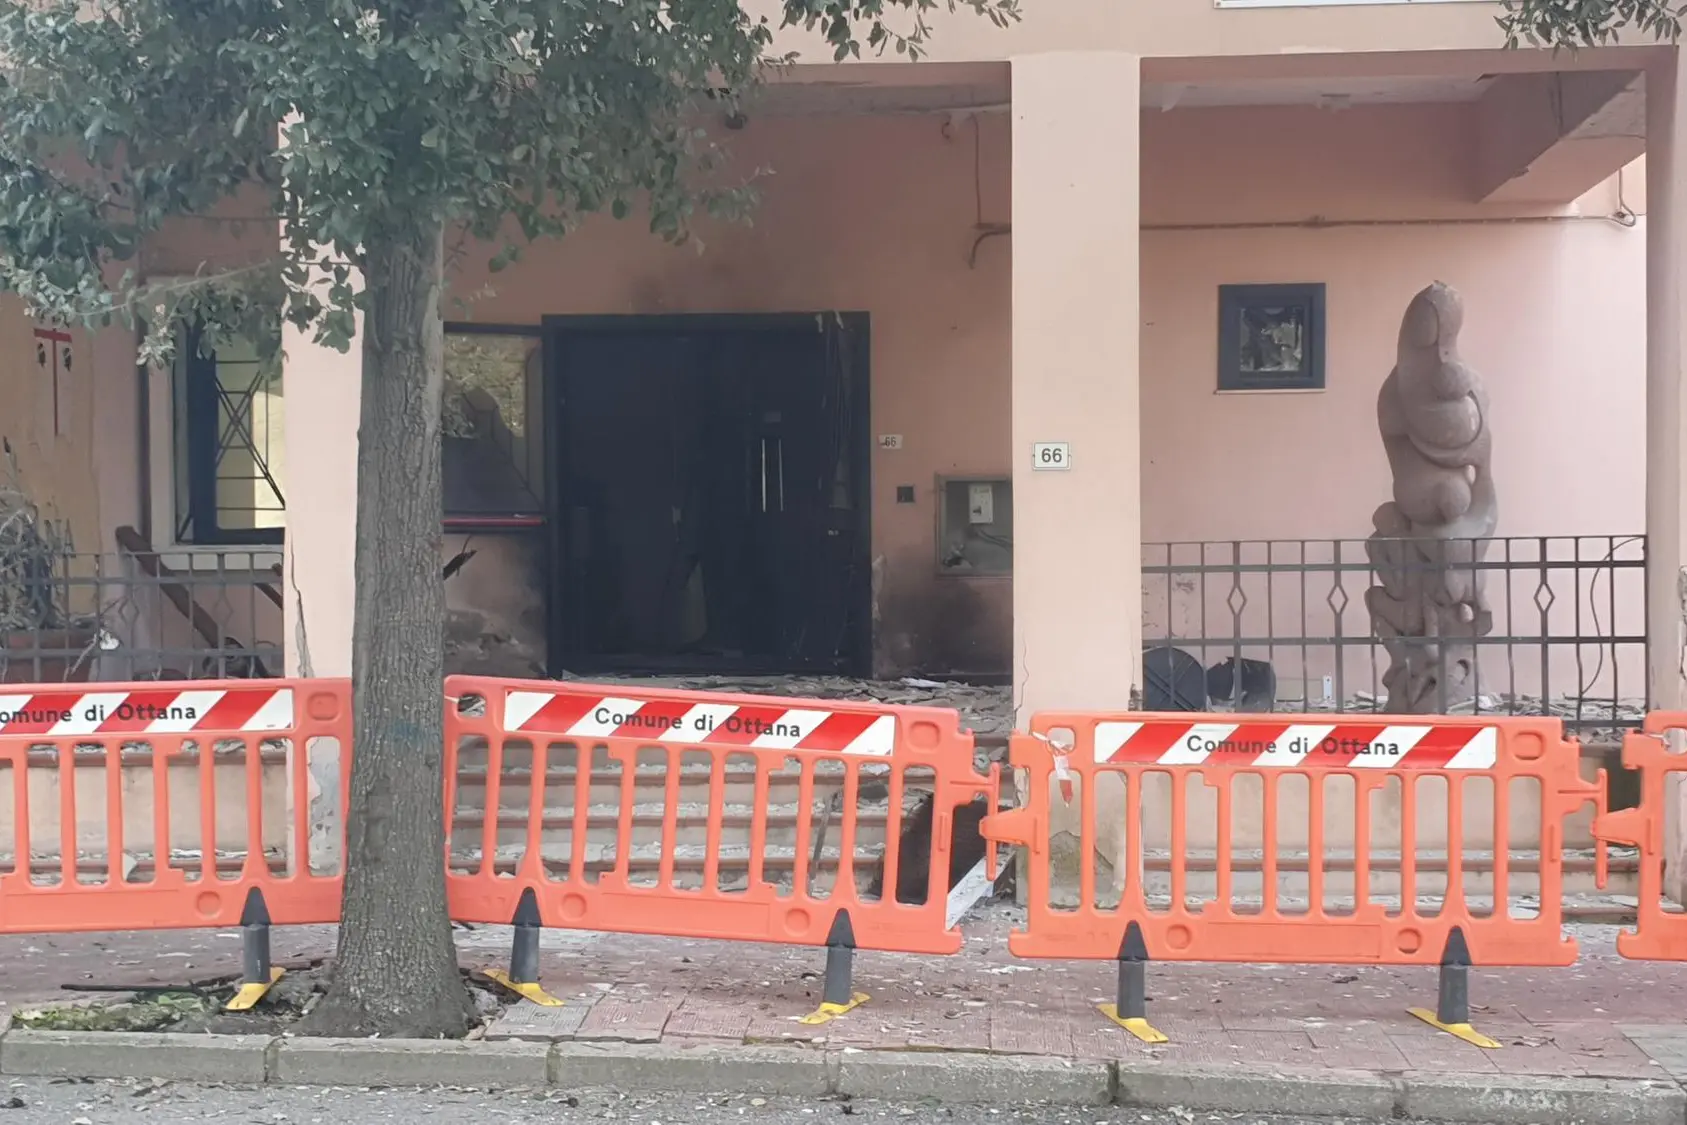 Die Tür des Gebäudes wurde durch die Bombe zerstört